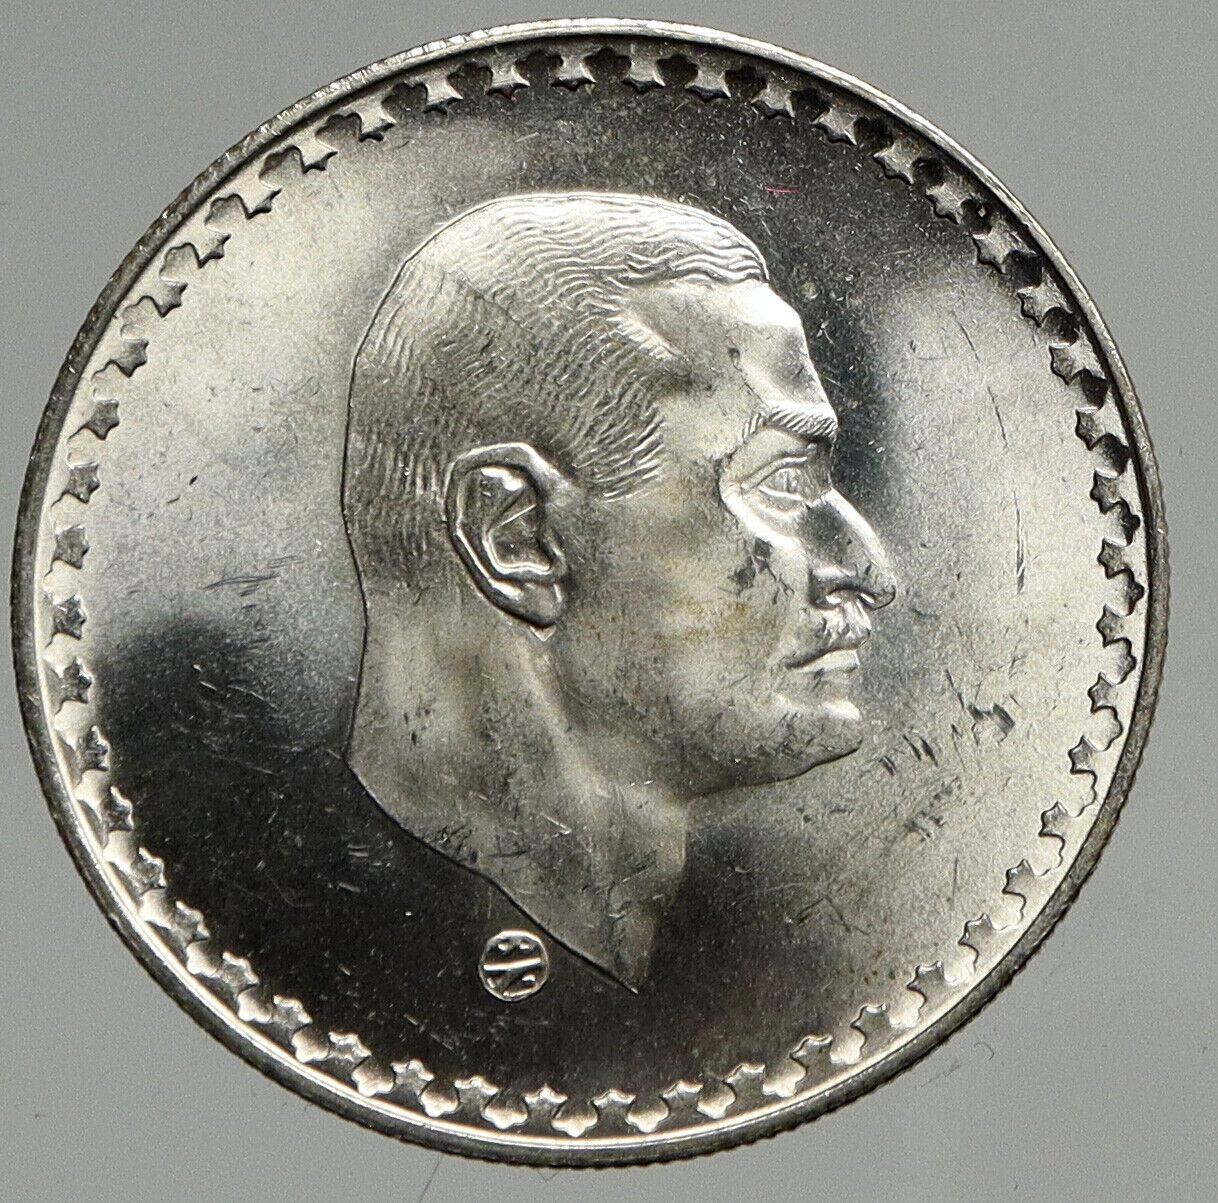 1970 EGYPT w President Nasser Hussein VINTAGE Antique Silver 50 Pias Coin i94652